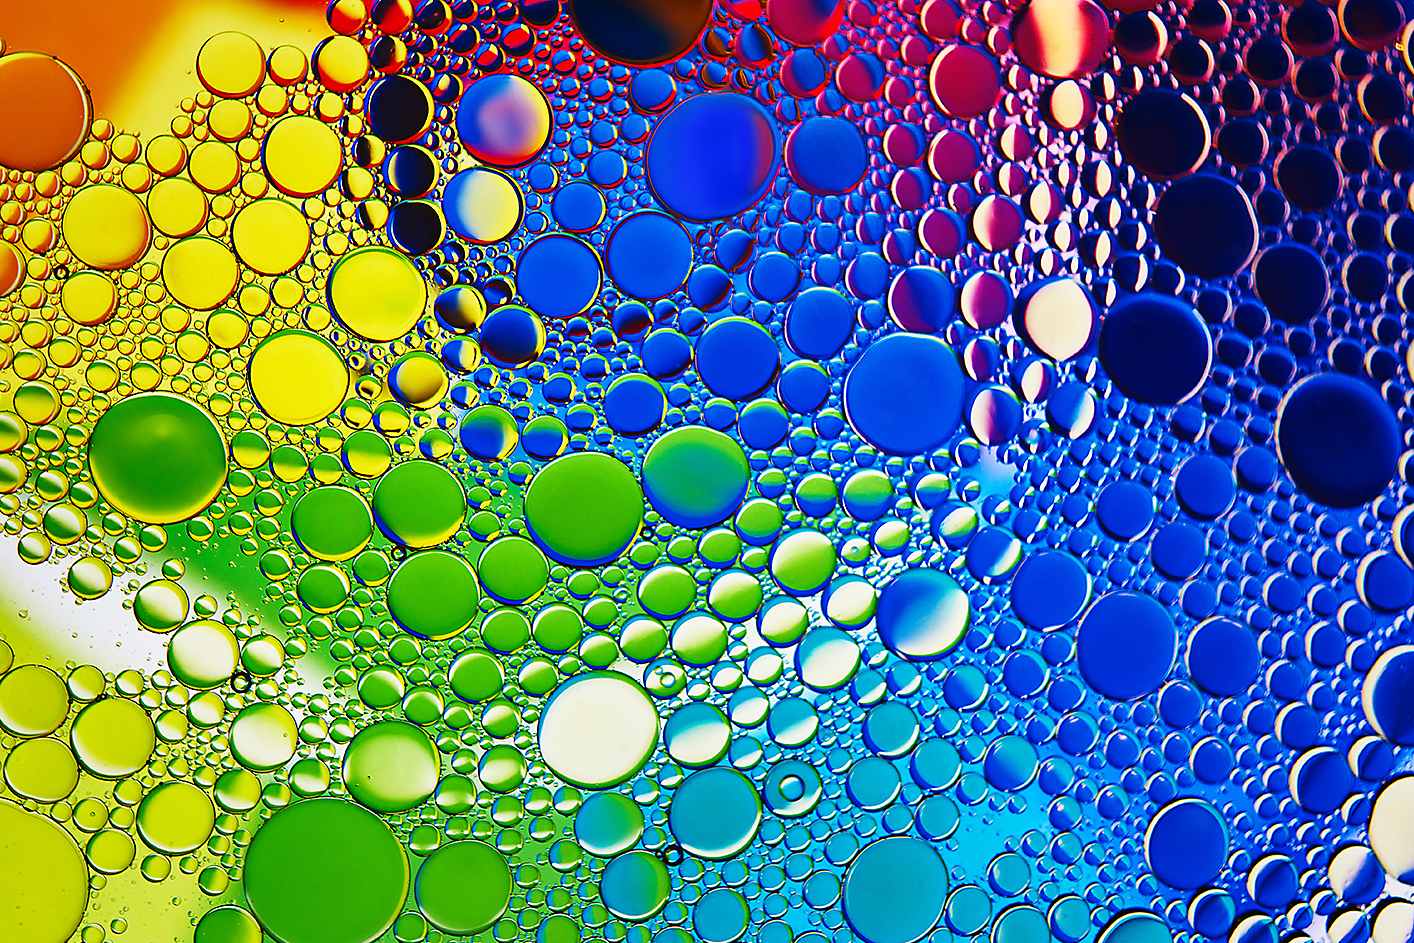 Snimka zaslona pokazuje mjehuriće u raznim bojama, nijansama i veličinama